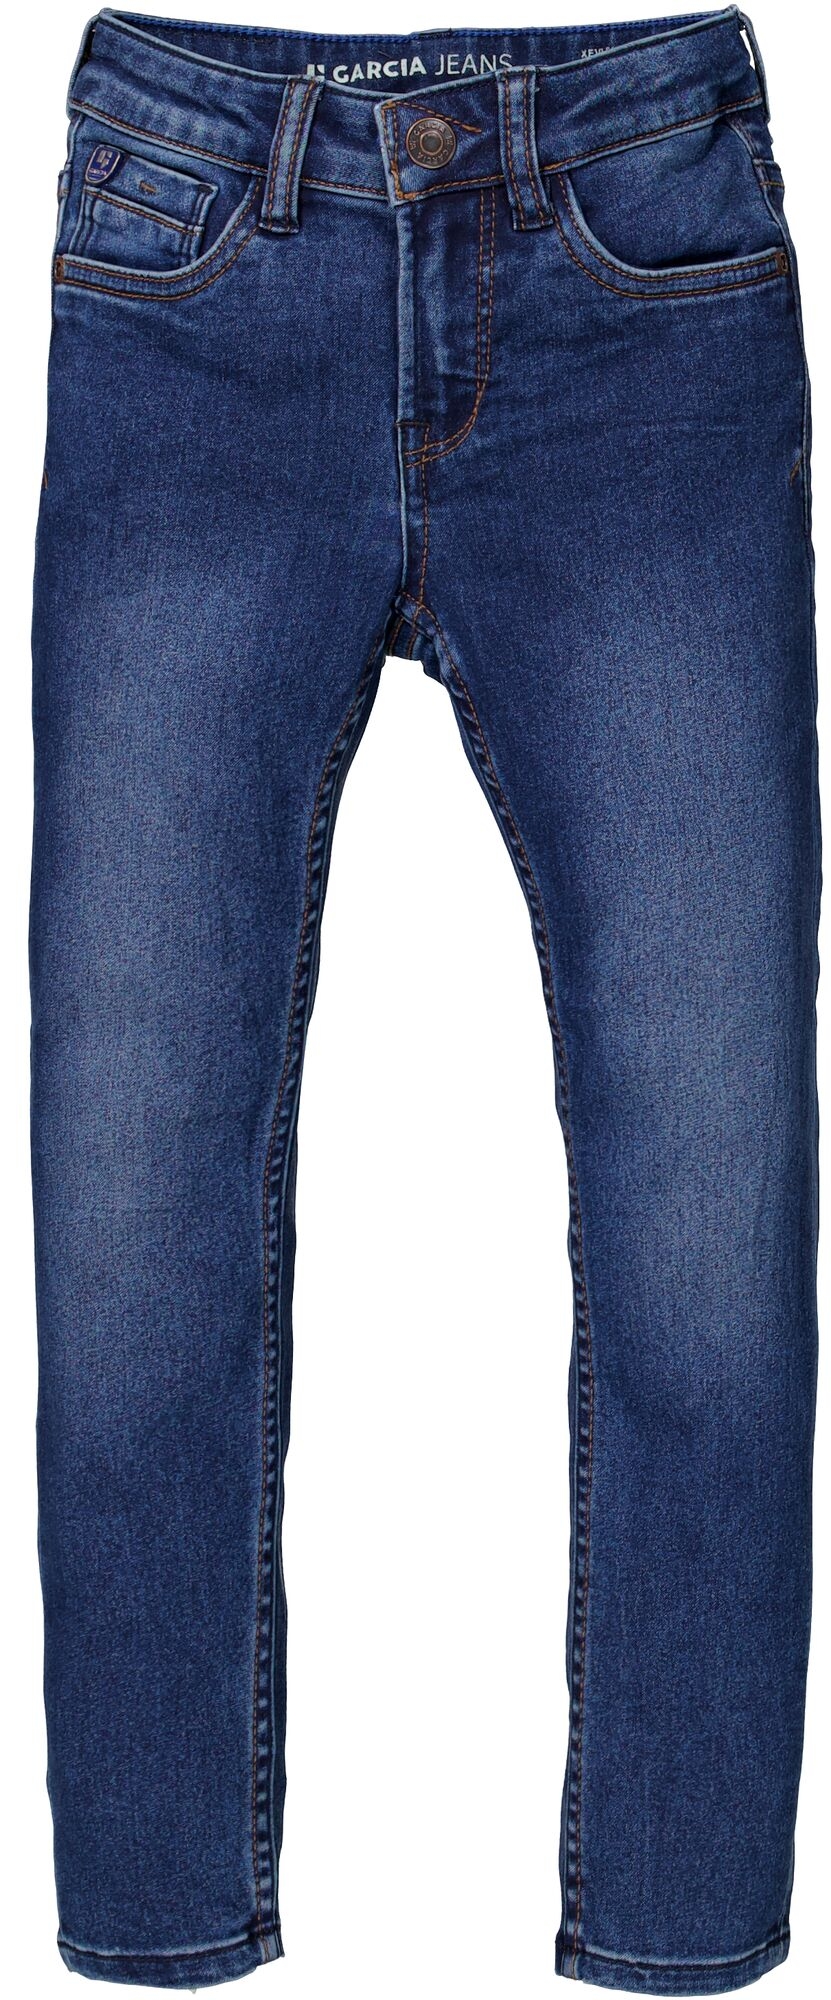 GARCIA Jeans 370 Xevi 10711372 kaufen | WÖHRL